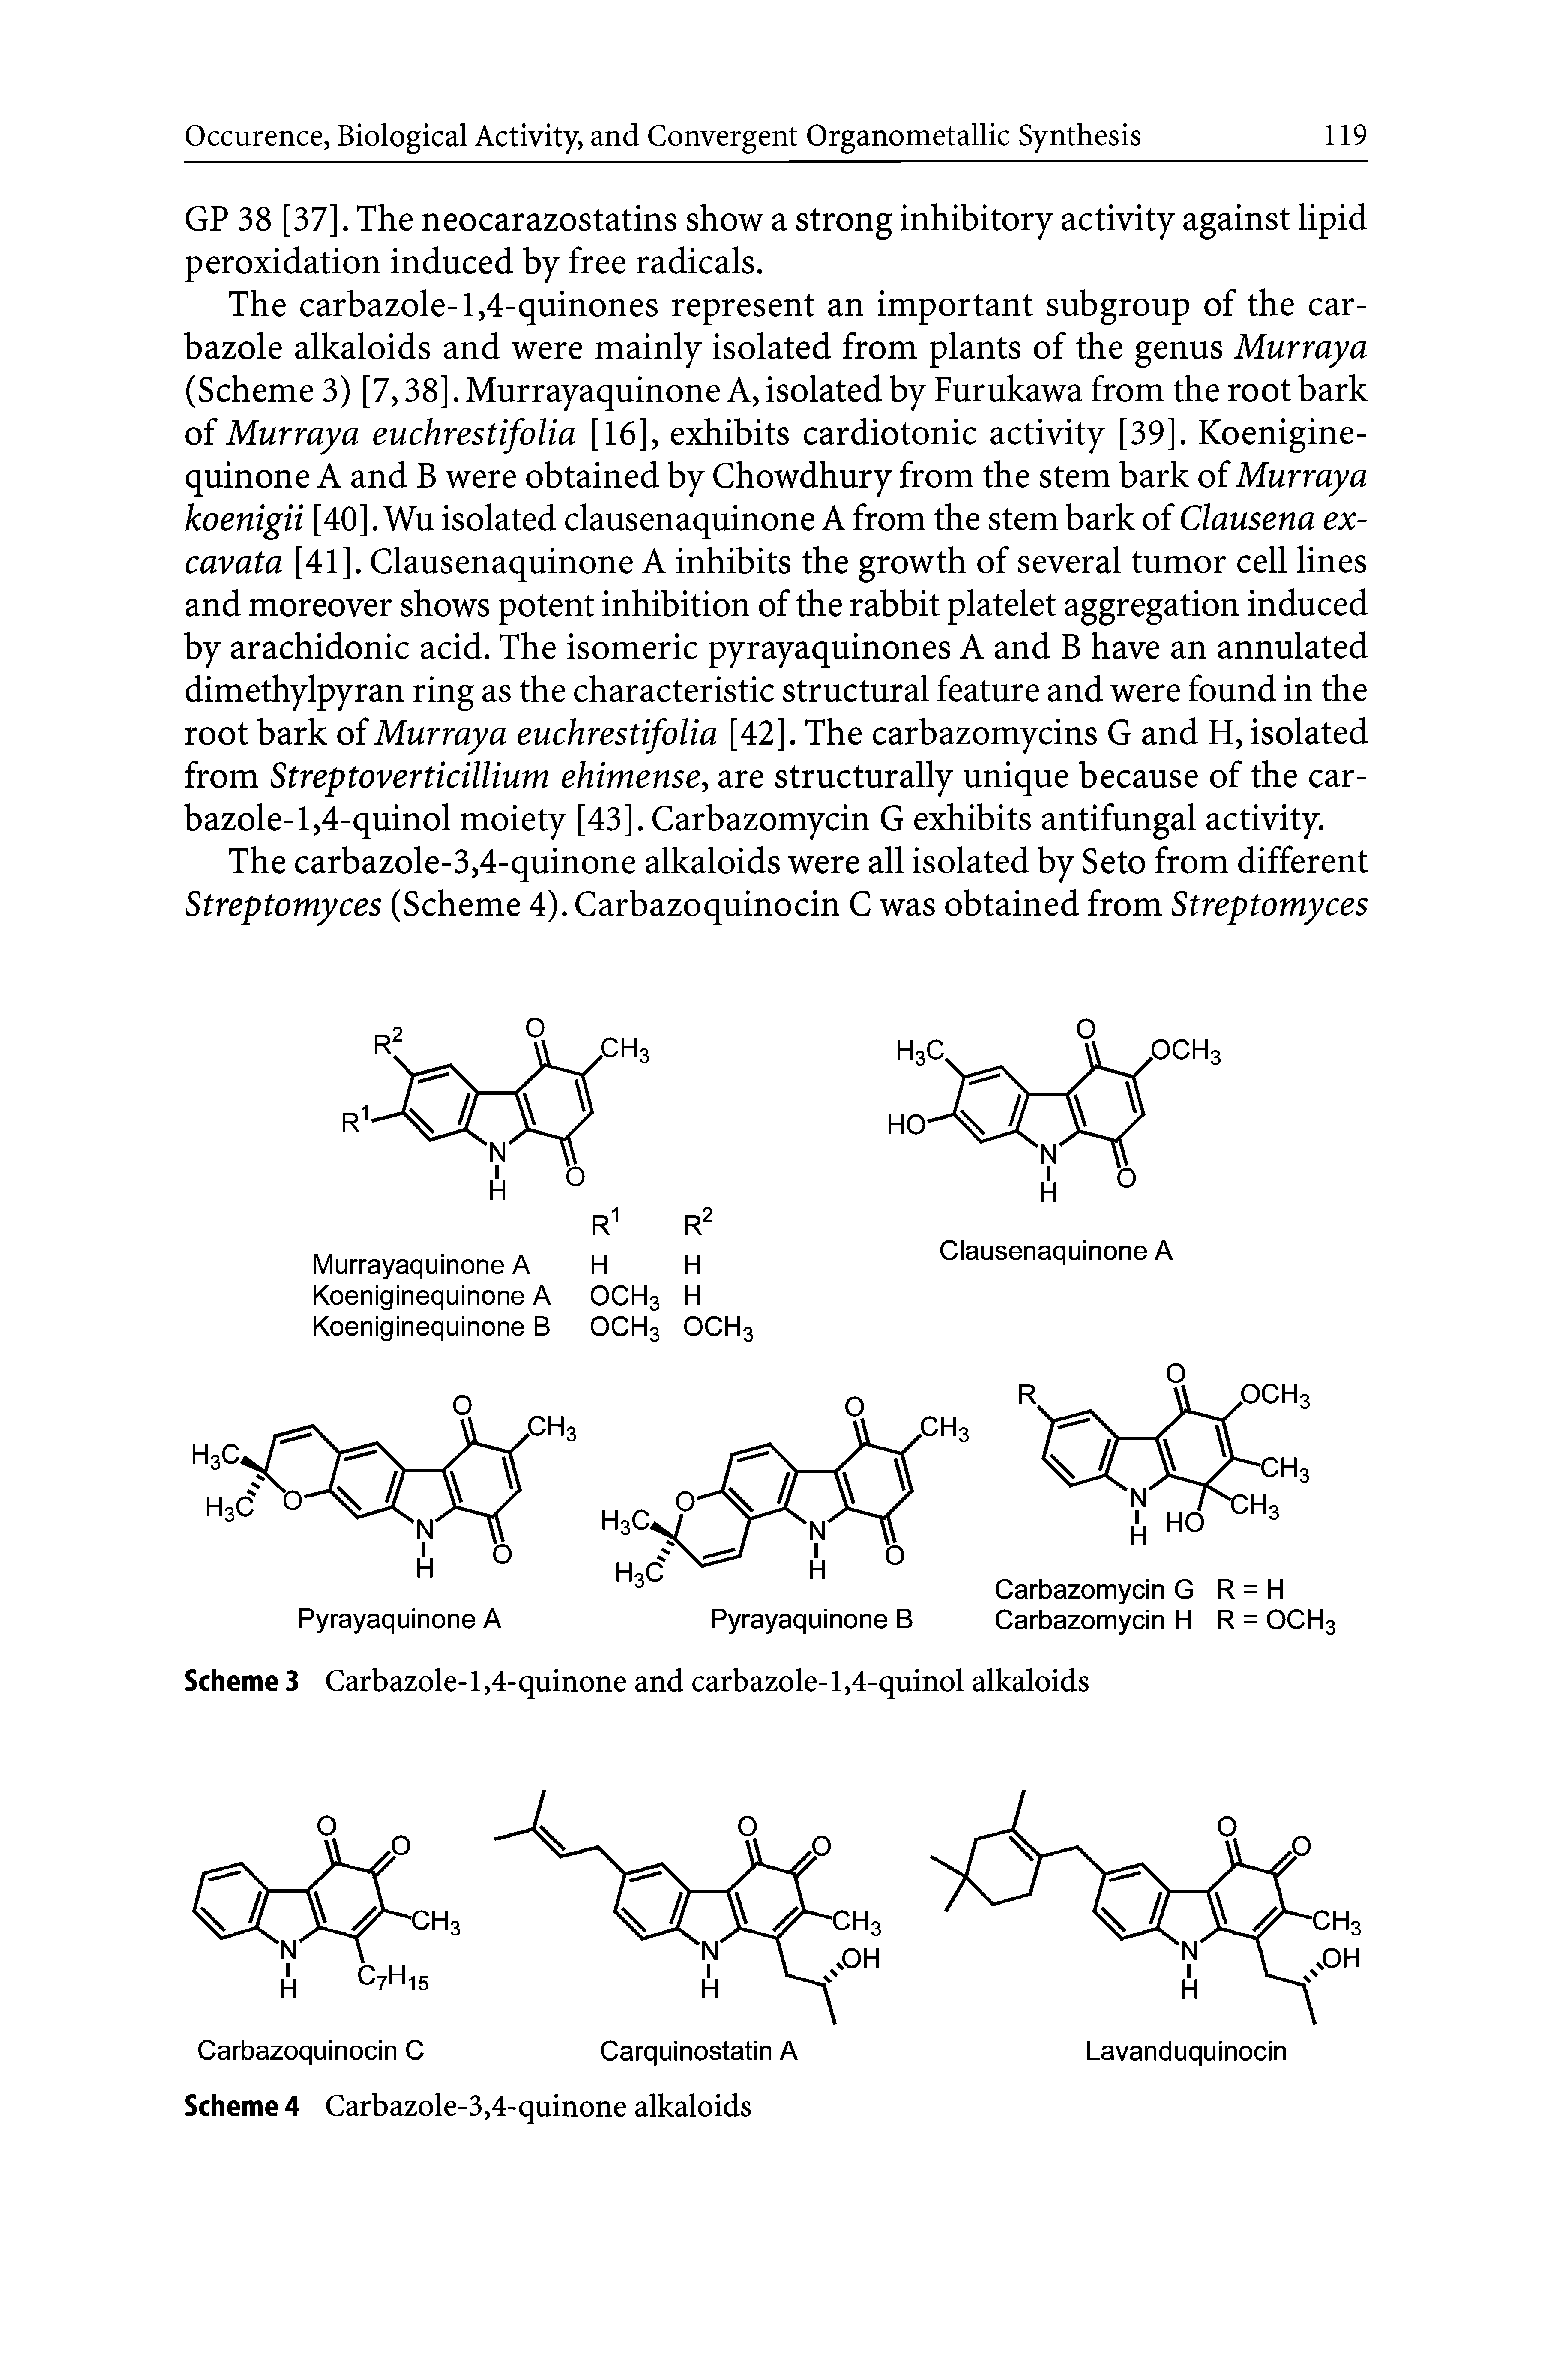 Scheme 3 Carbazole-l,4-quinone and carbazole-l,4-quinol alkaloids...